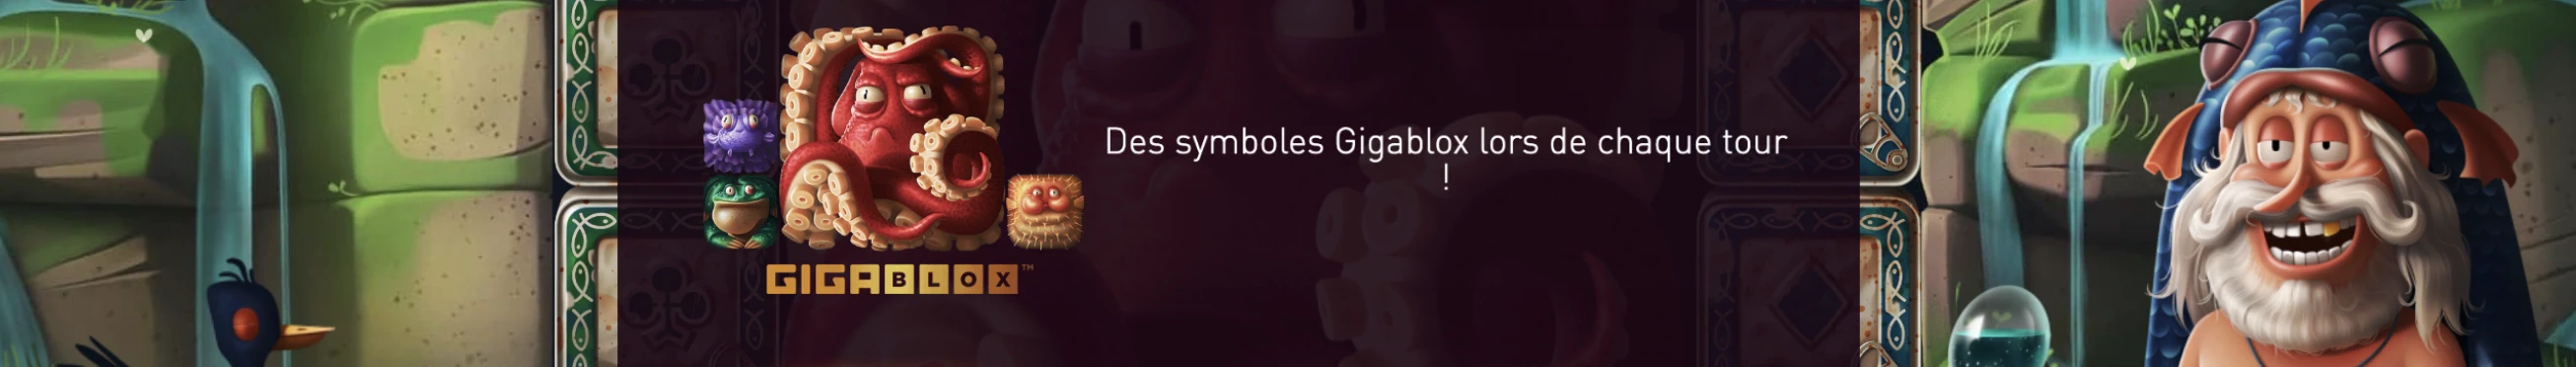 Symbole Gigablox sur la machine a sous WaterBlox du provider Yggdrasil